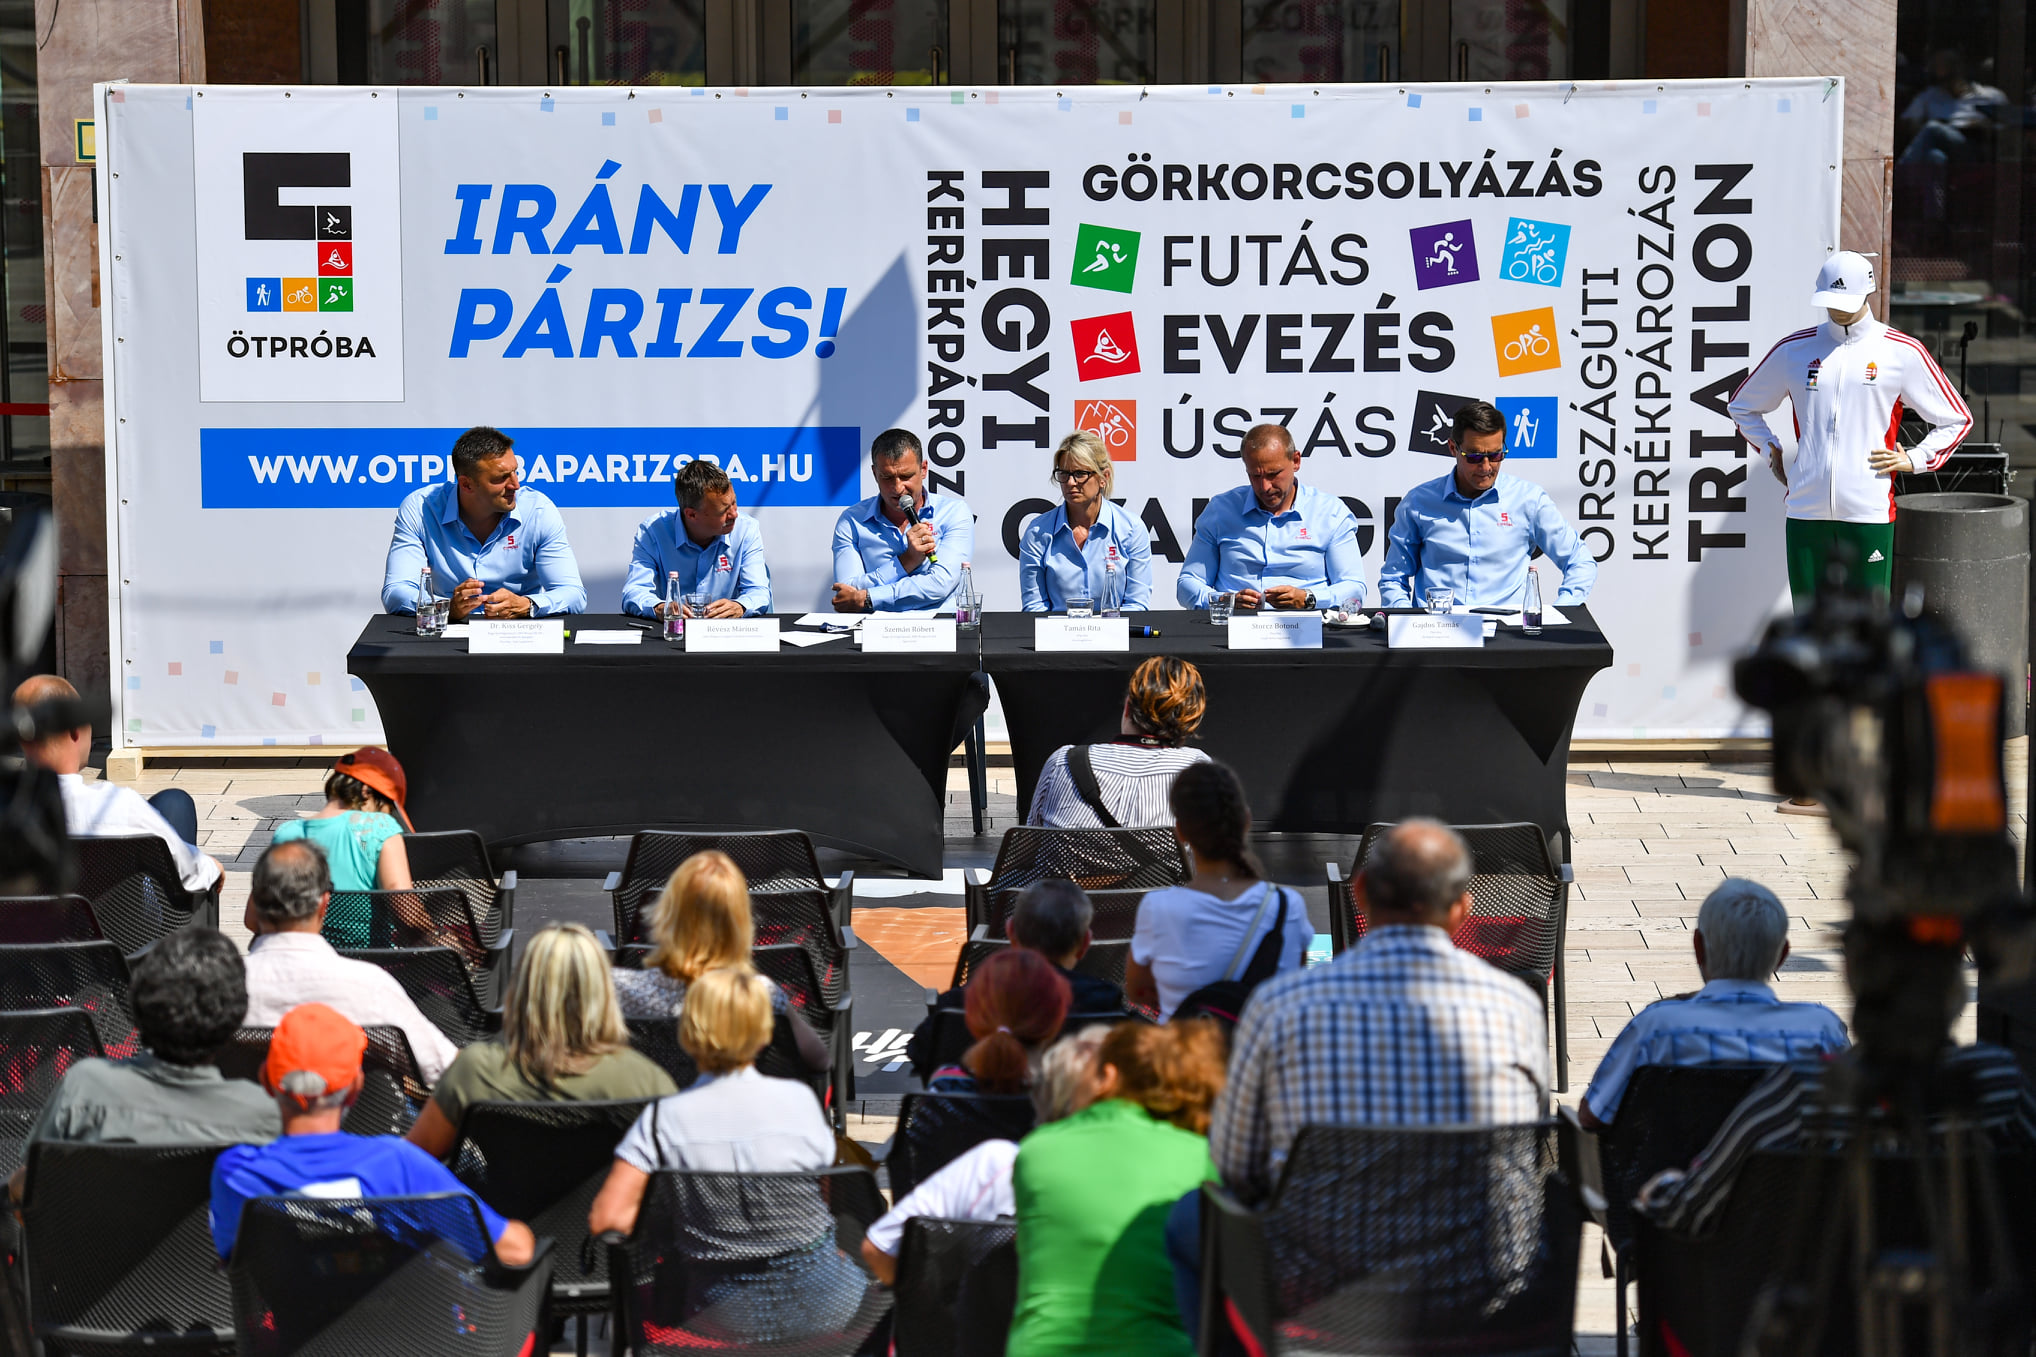 Az asztalánál balról jobbra: Dr. Kiss Gergely, Révész Máriusz, Szemán Róbert, Storcz Botond, Tamás Rita, Gajdos Tamás